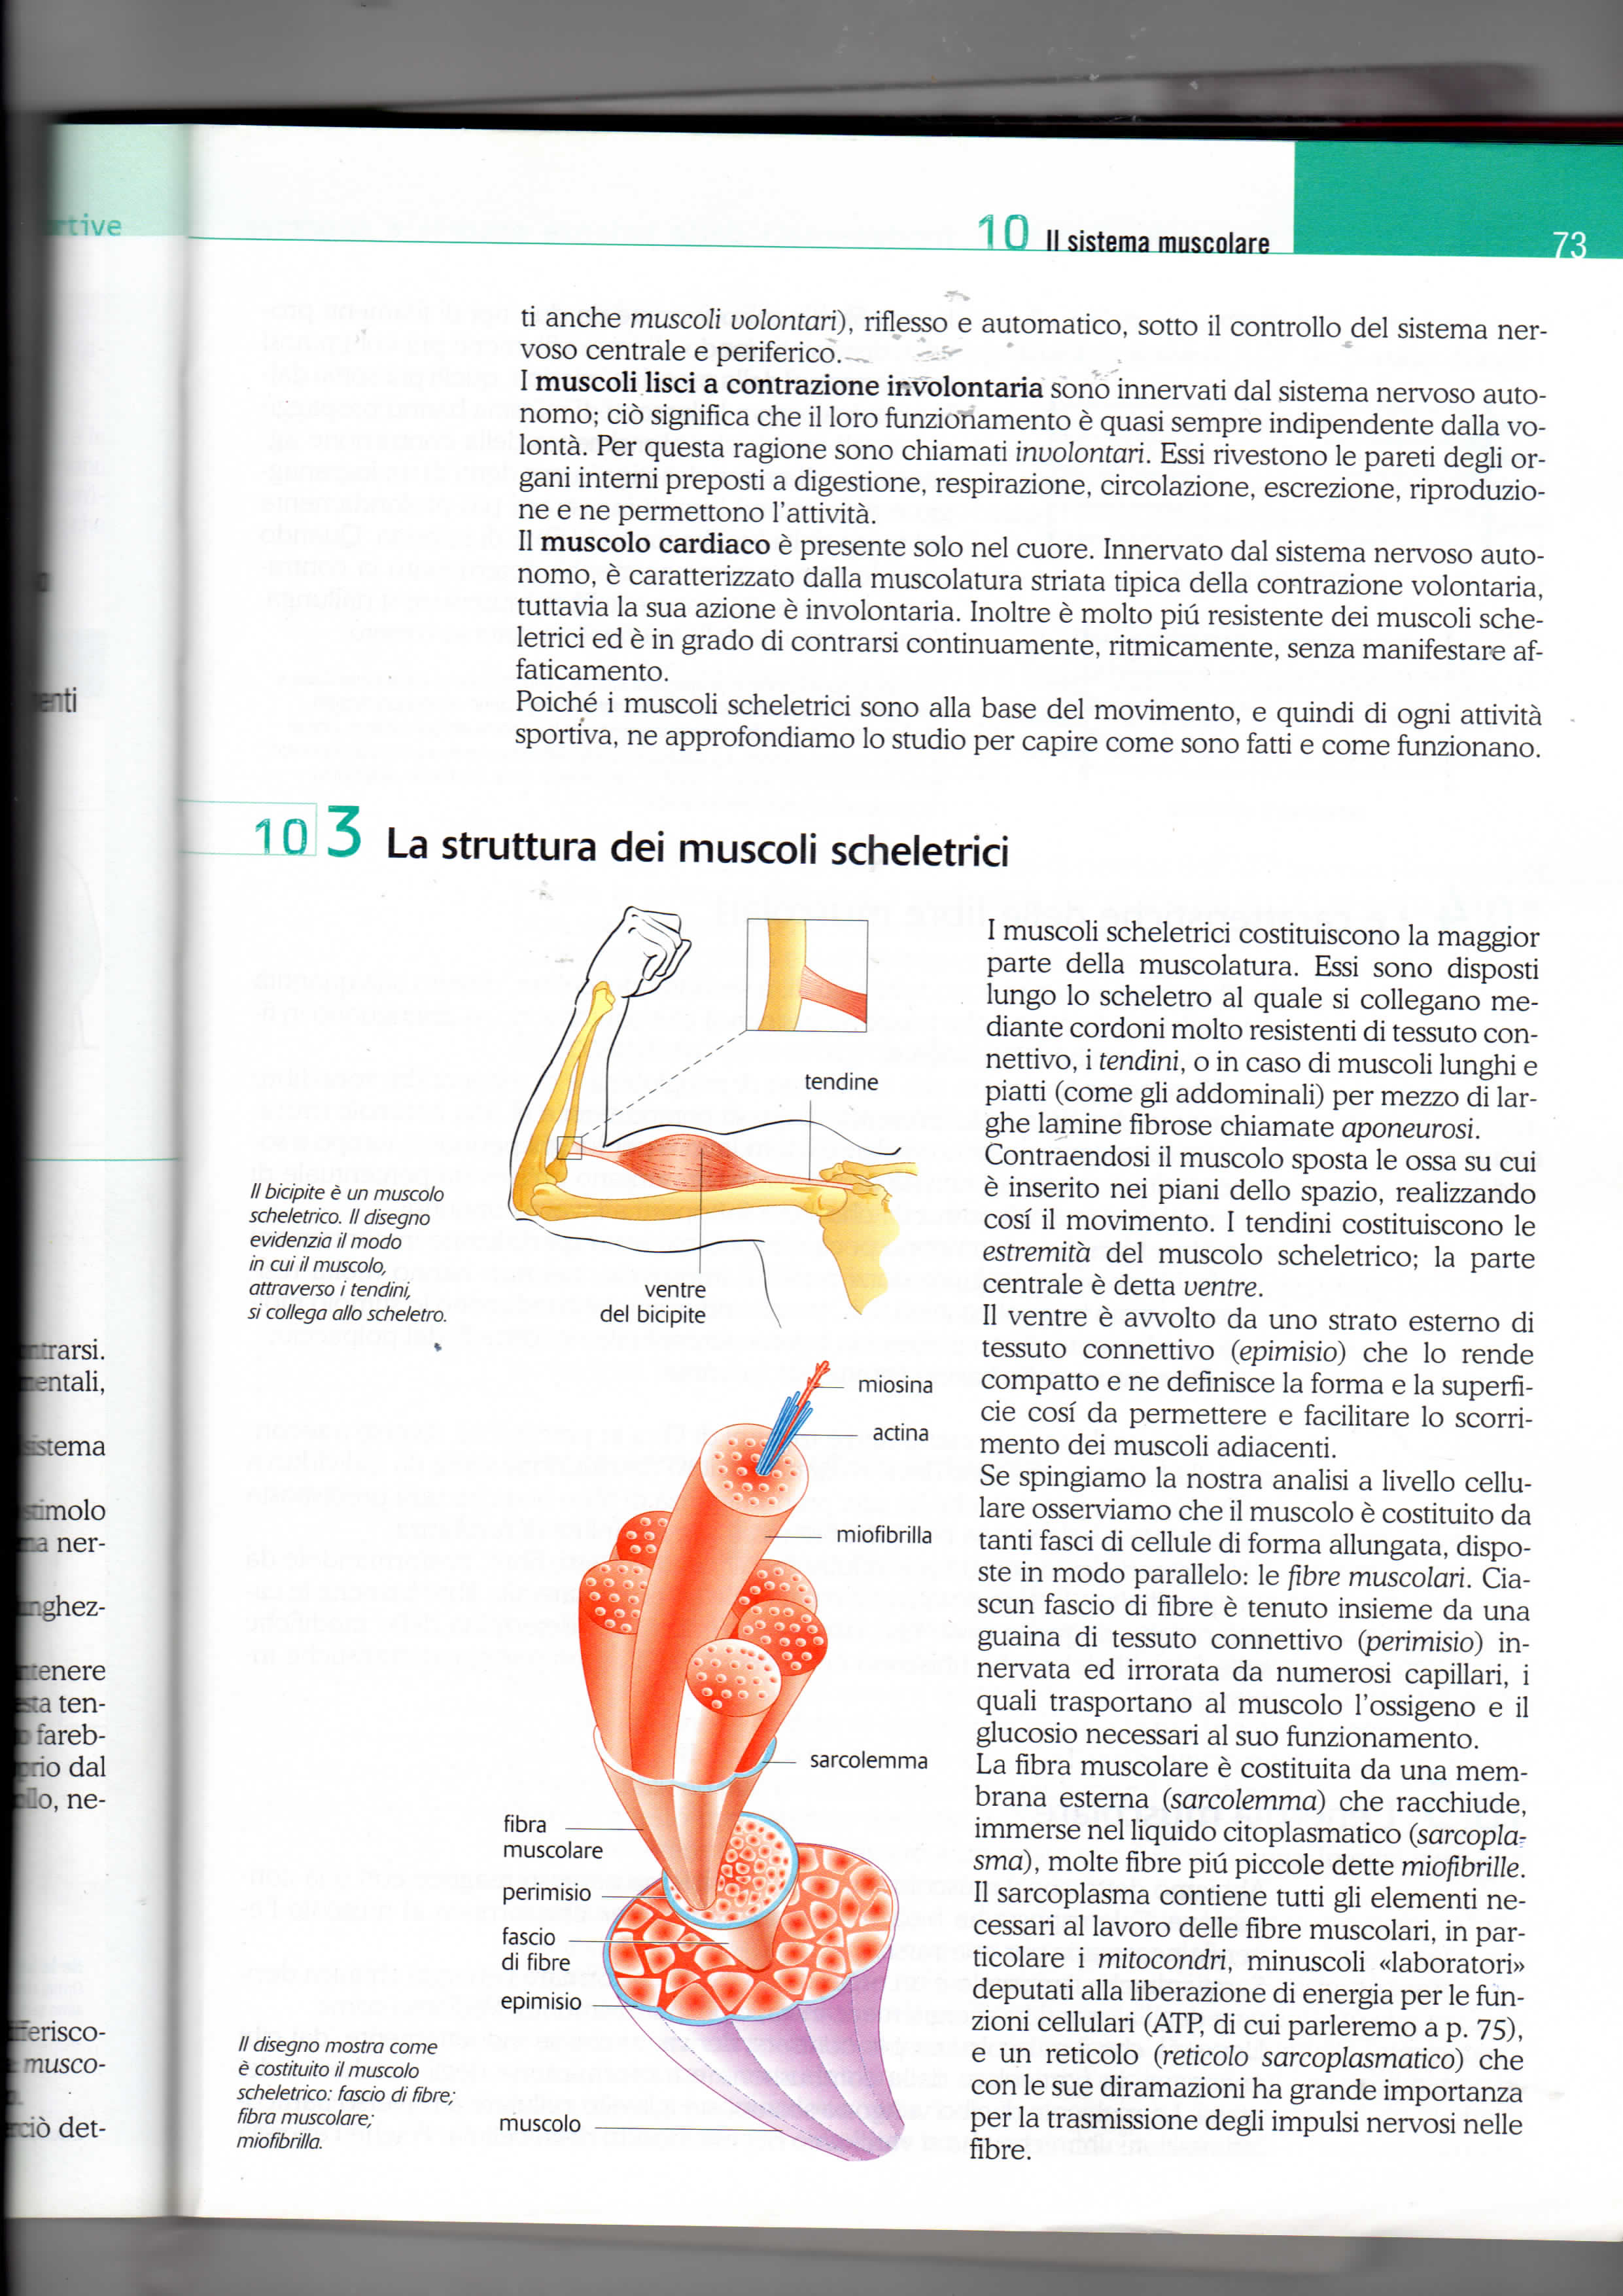 10 11 sistema muscolare ini ti anche musco/i volontarii), riflesso e automatico, sotto il controllo del sistema nervoso centrale e periferico.